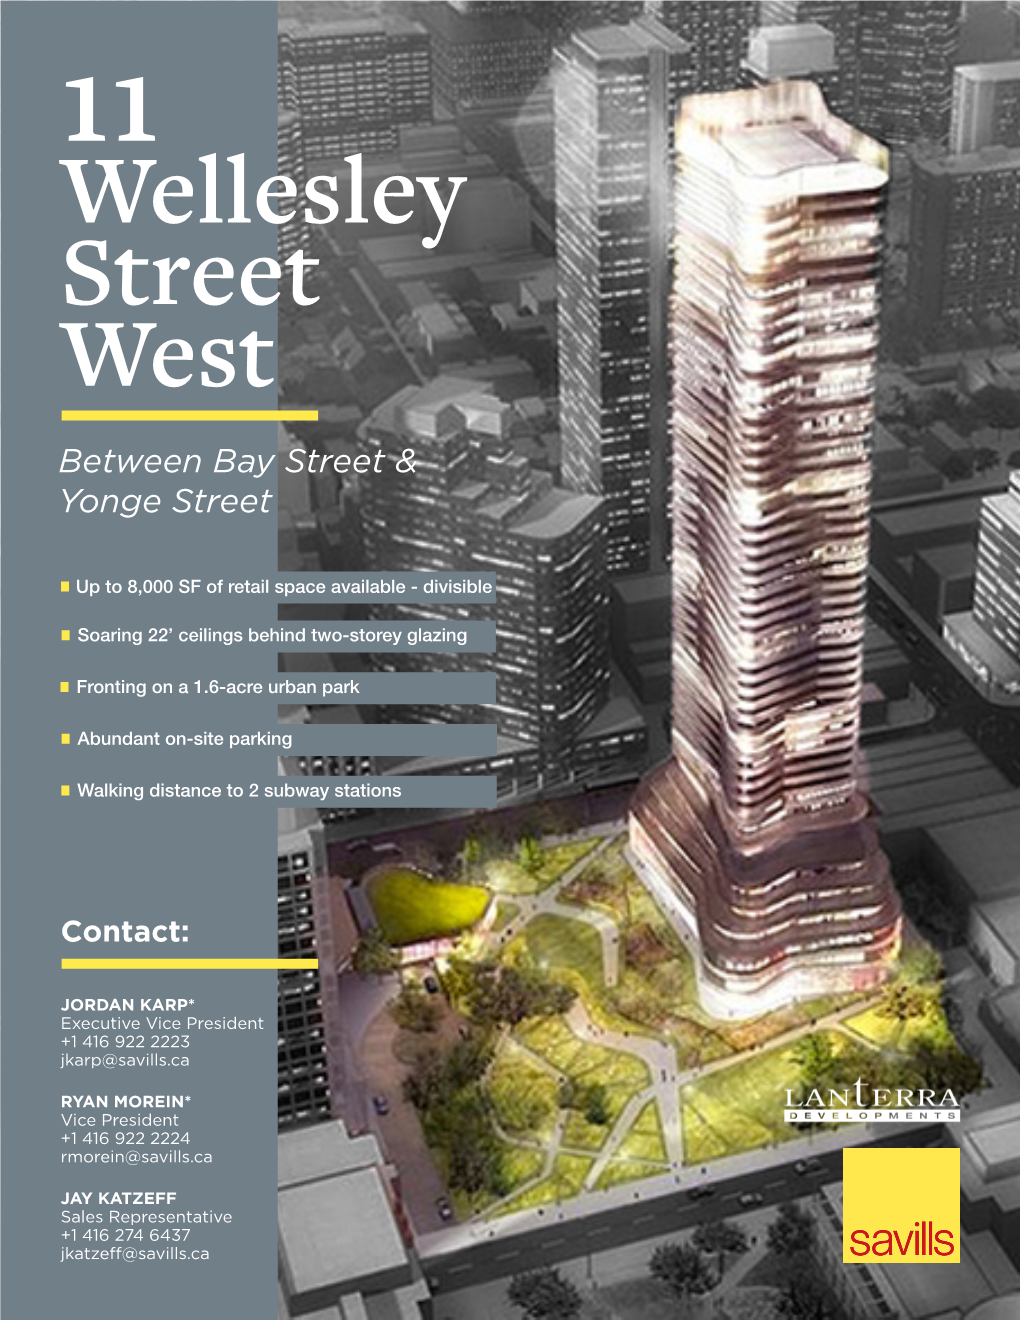 Wellesley Street West